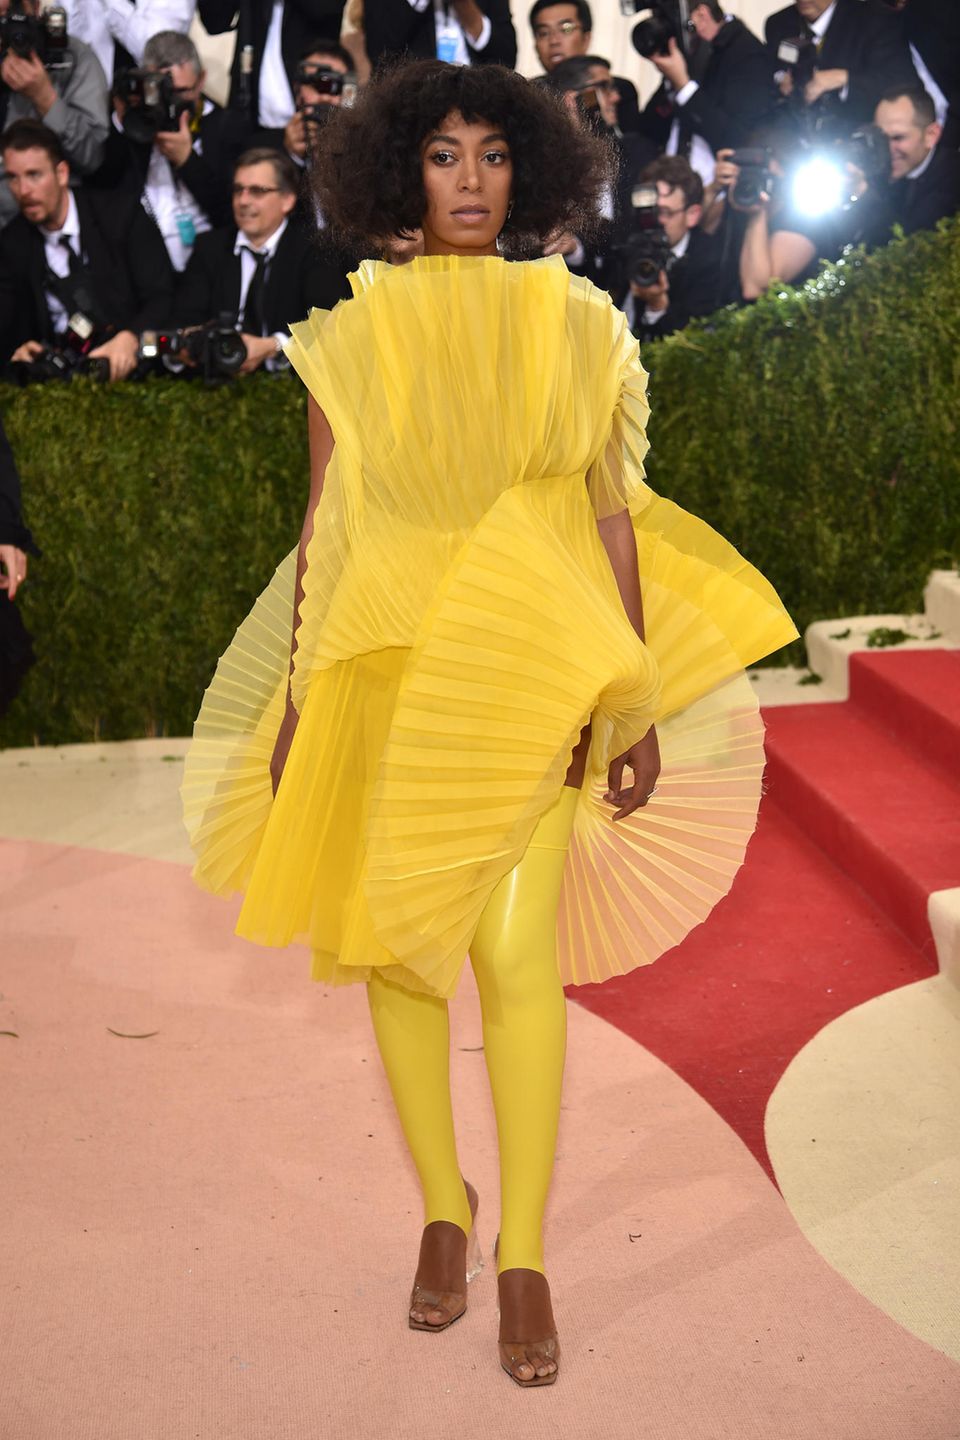 Eine Vision in Gelb: Solange Knowles setzt auf erfrischendes, mit zahlreichen Volants angereichertes Zitronengelb. Die halterlosen Latexleggings wirken hingegen etwas skurril.